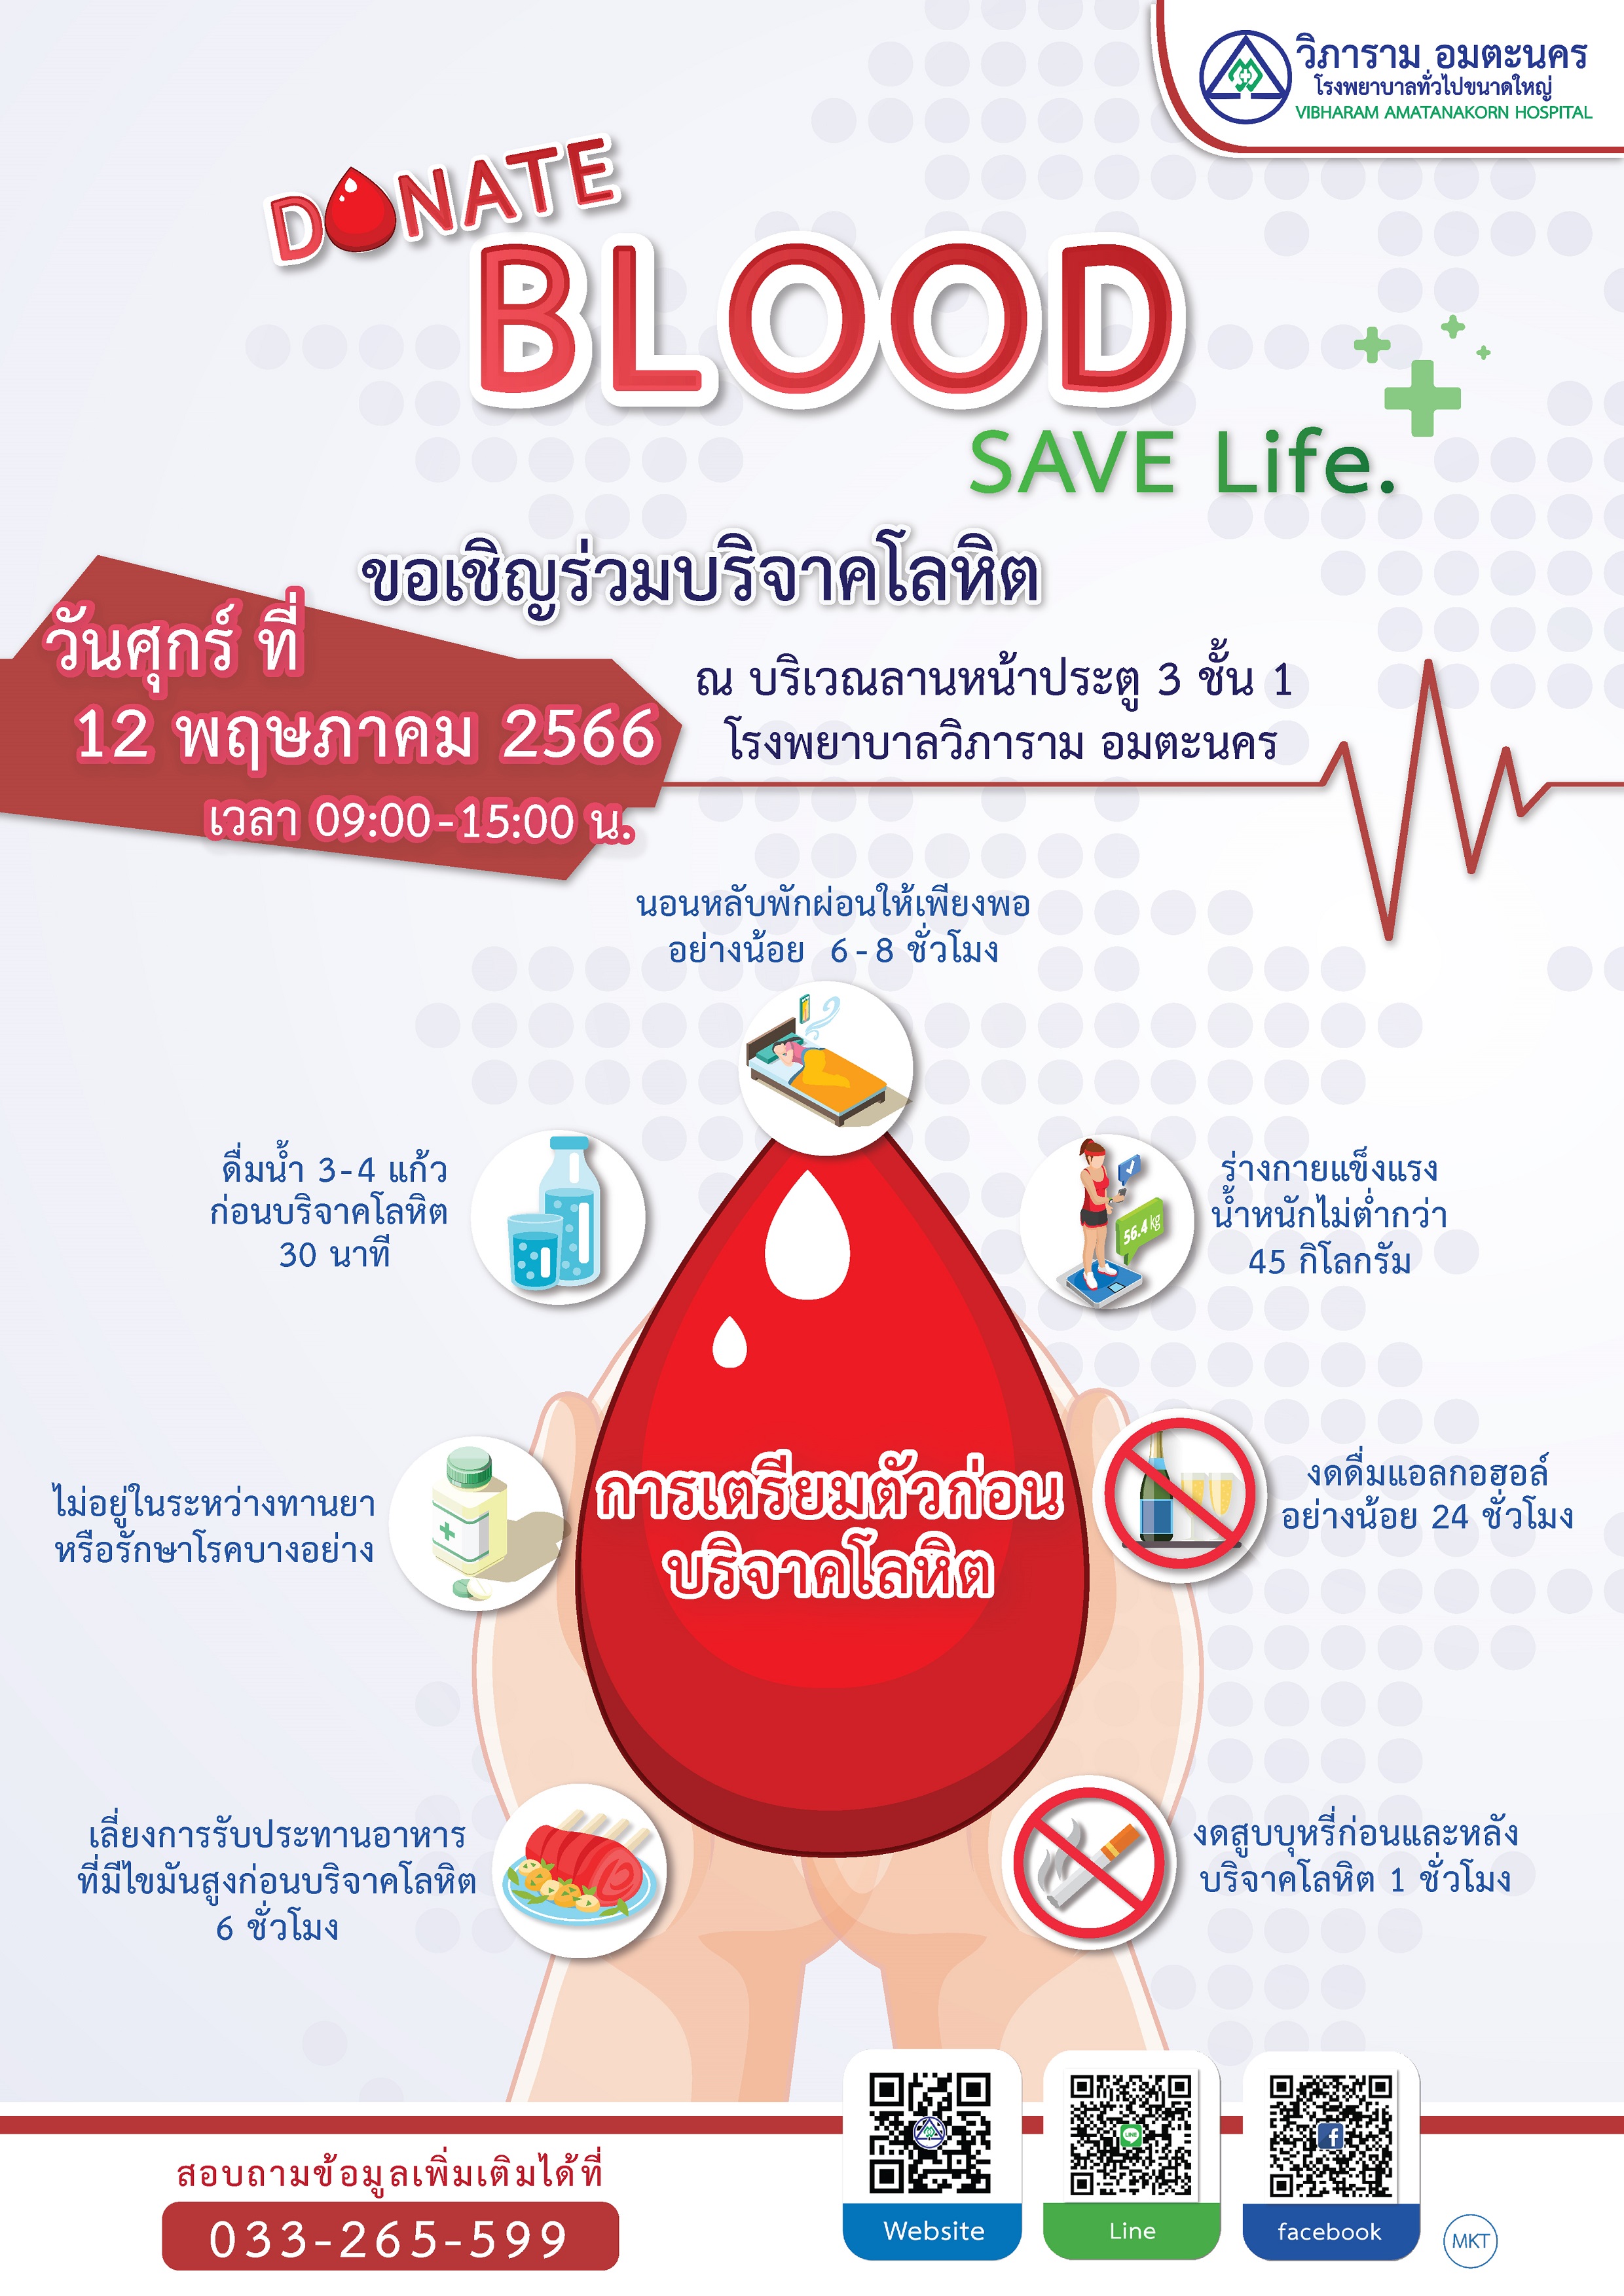 บริจาคโลหิต “DONATE BLOOD SAVE LIFE”